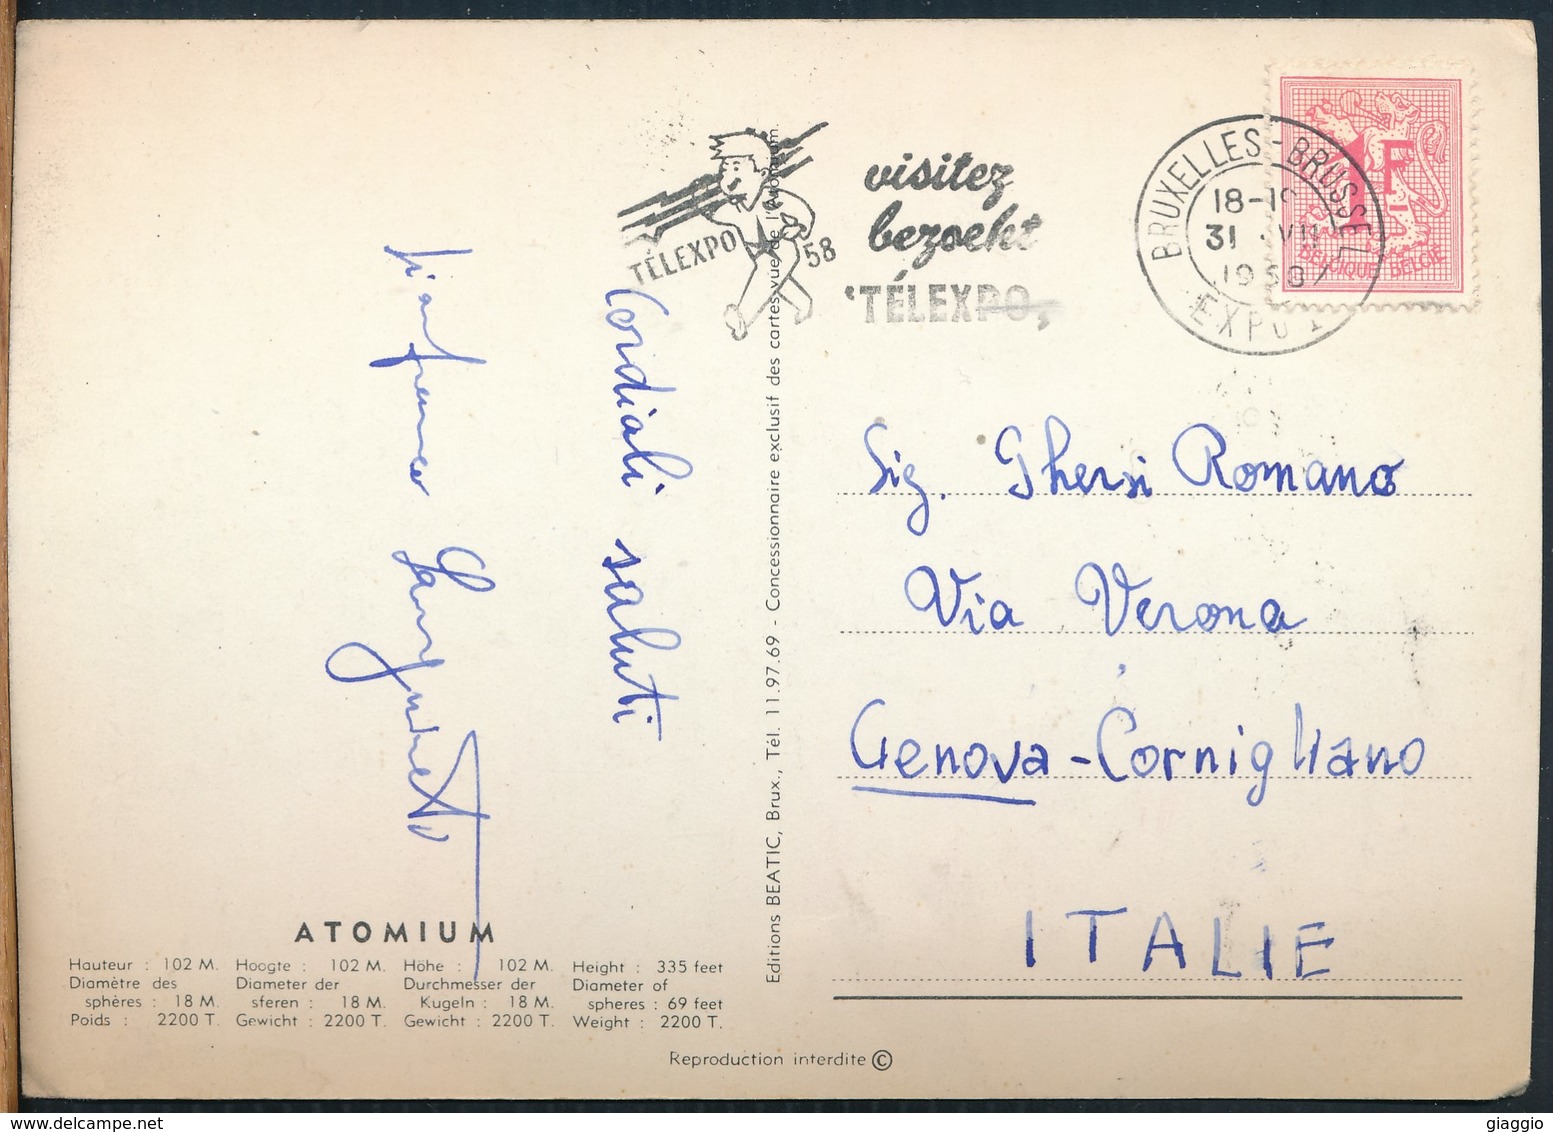 °°° 14879 - BELGIUM BELGIO - ATOMIUM - 1958 With Stamps °°° - Mostre Universali